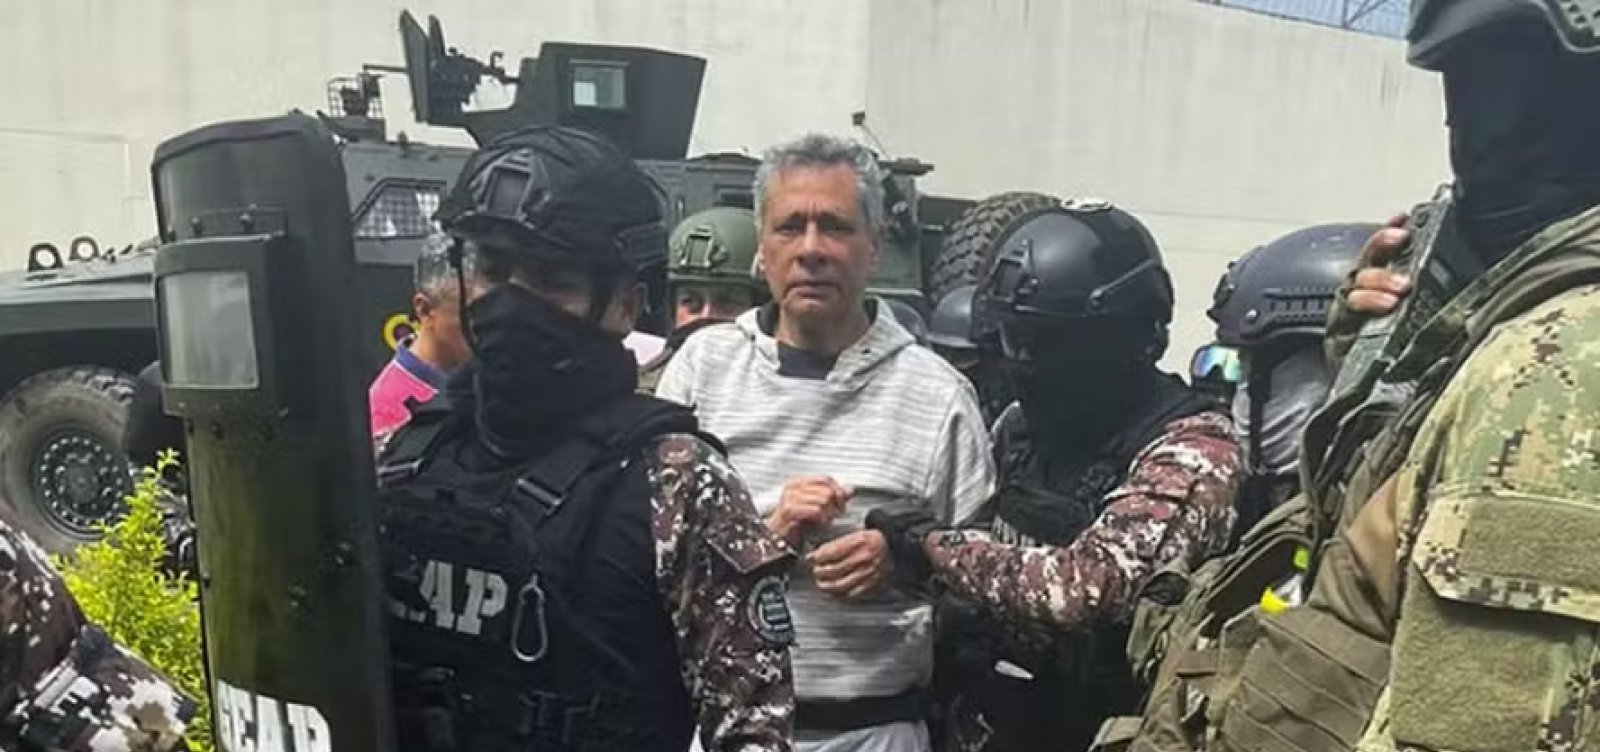 Equador transfere ex-vice-presidente Jorge Glas para segurança máxima